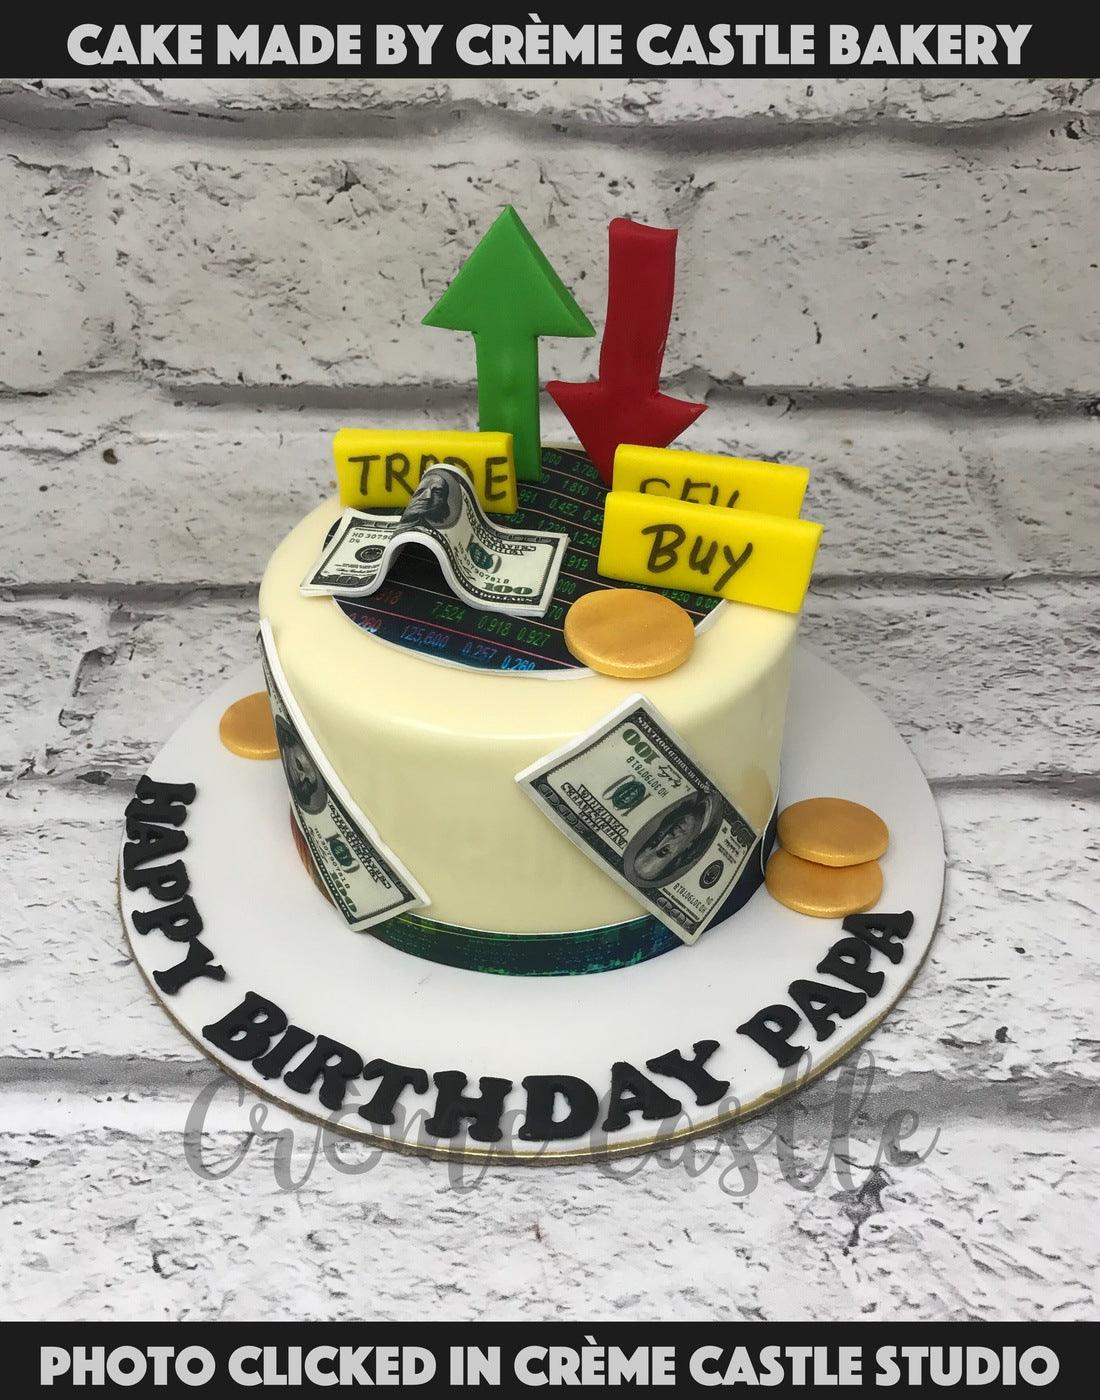 Stock Broker Birthday Cake | Stock Market Cake Tutorial By Seller FactG -  YouTube